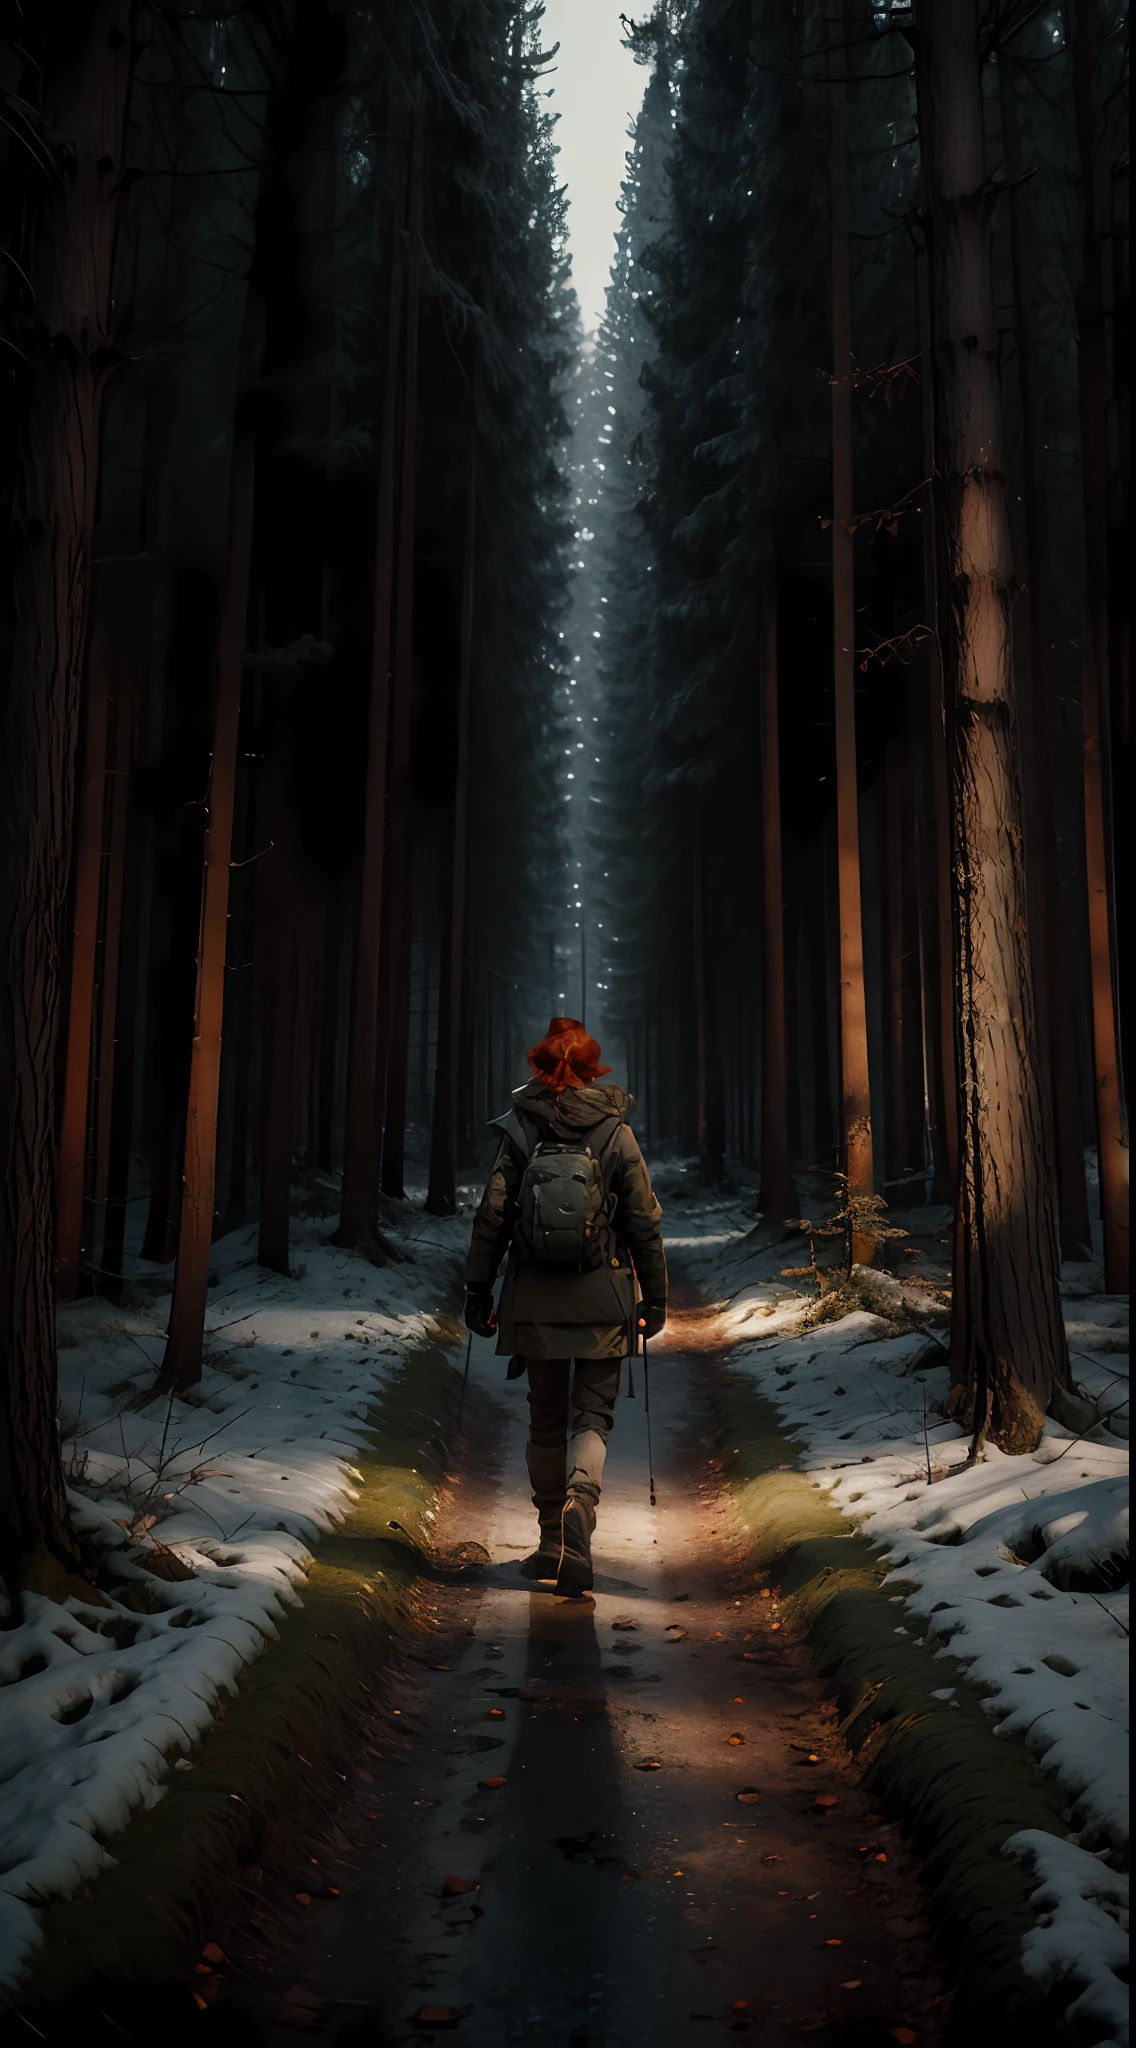 امرأة ذات شعر أحمر تمشي في غابة في الغابة في الشتاء ليلاً وبيدها مصباح يدوي في مربع, خلف, الزي الشتوي العسكري, 8 كيلو, تقديم الأوكتان, جريج روتكوفسكي